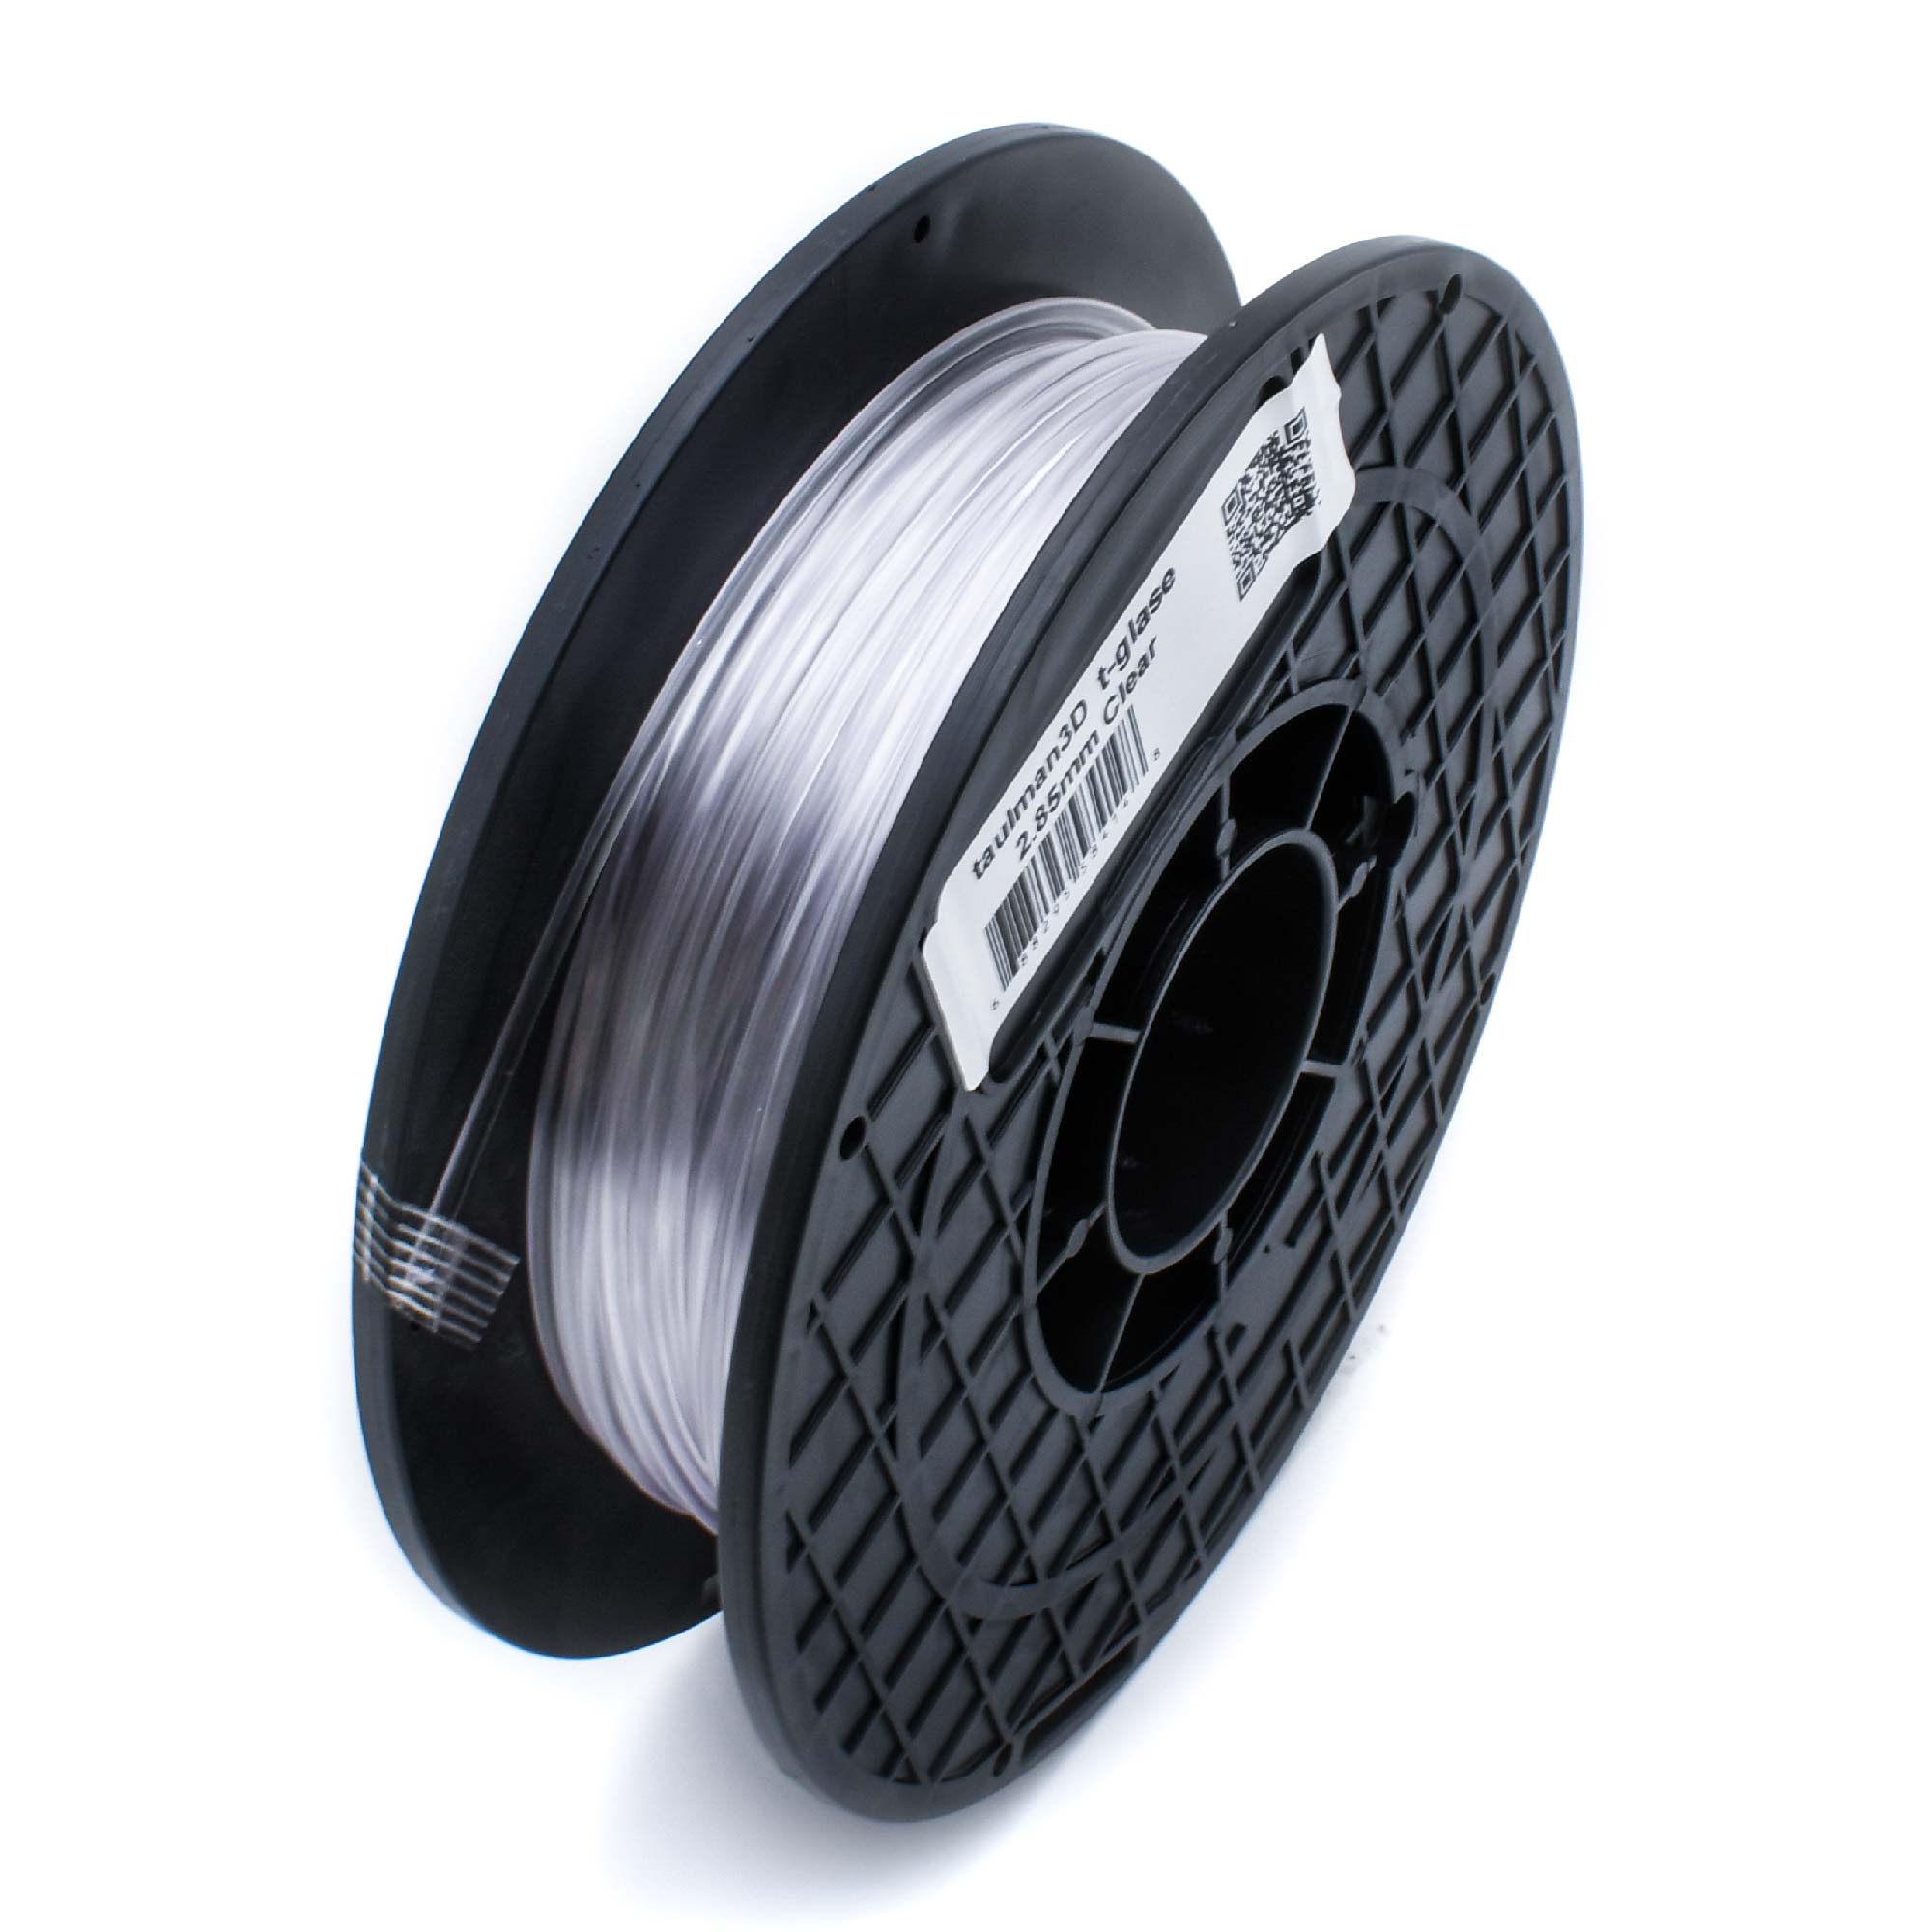 PRO Series Carbon Fiber PLA - 1.75mm (1lb)